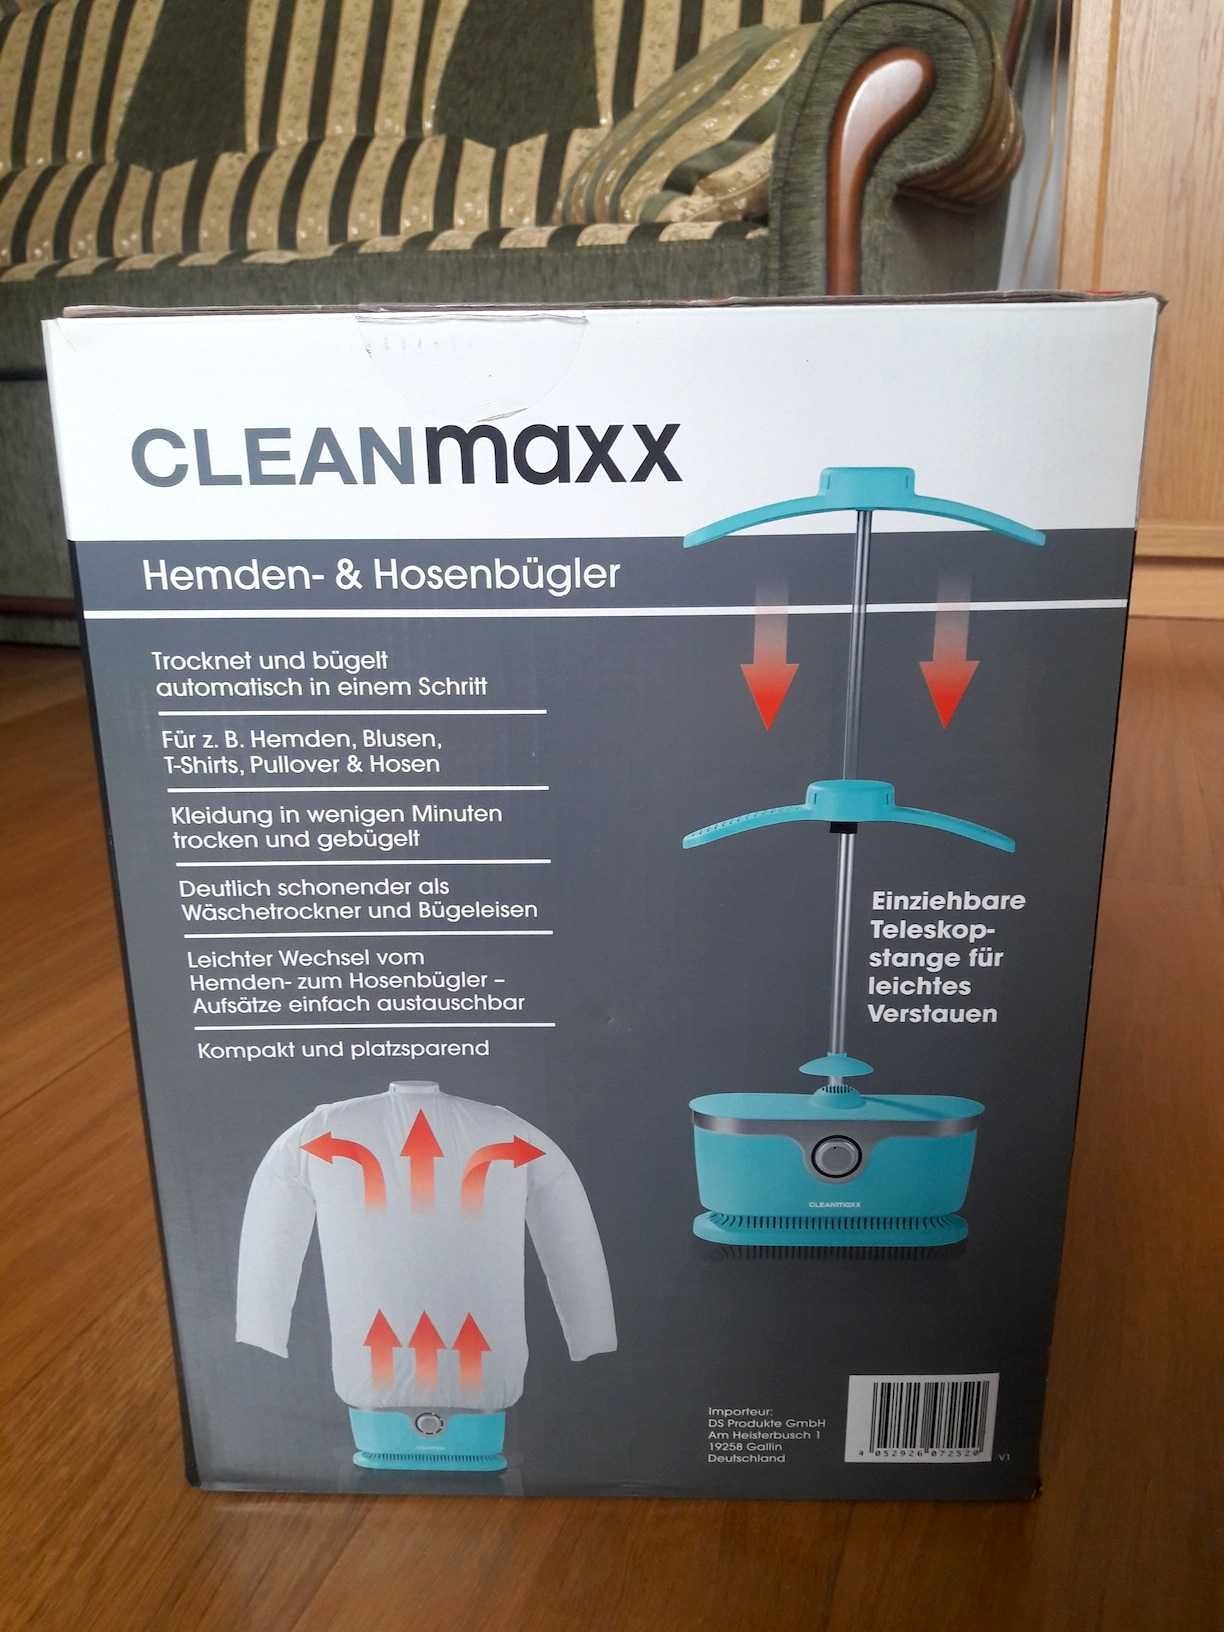 Urządzenie do suszenia ubrań CLEANmaxx 1800 W